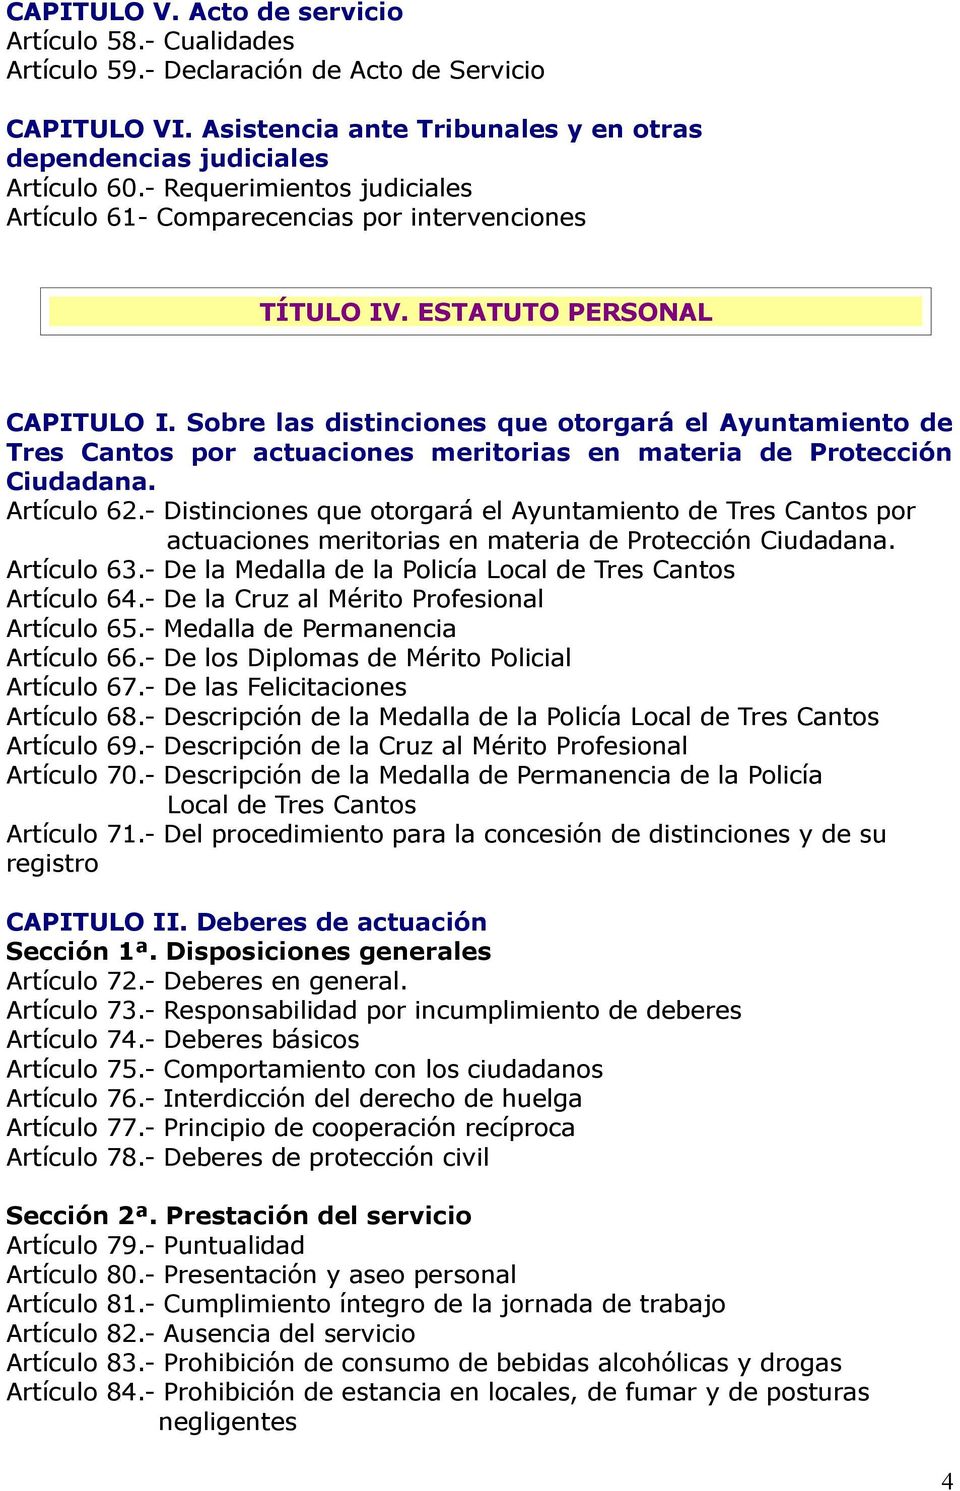 Sobre las distinciones que otorgará el Ayuntamiento de Tres Cantos por actuaciones meritorias en materia de Protección Ciudadana. Artículo 62.